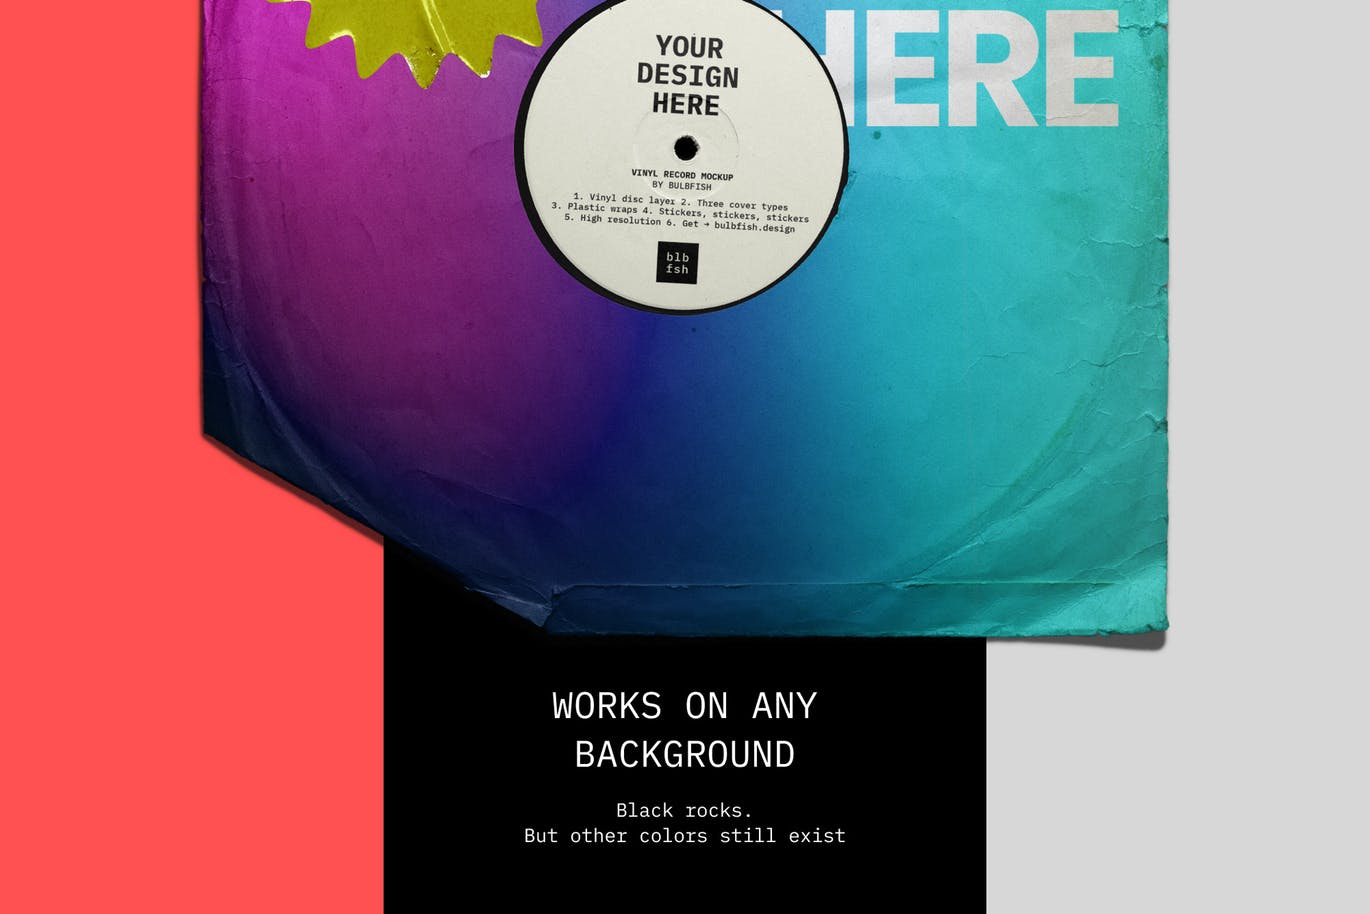 乙烯基唱片包装盒及封面设计图素材库精选模板 Vinyl Record Mockup插图(2)